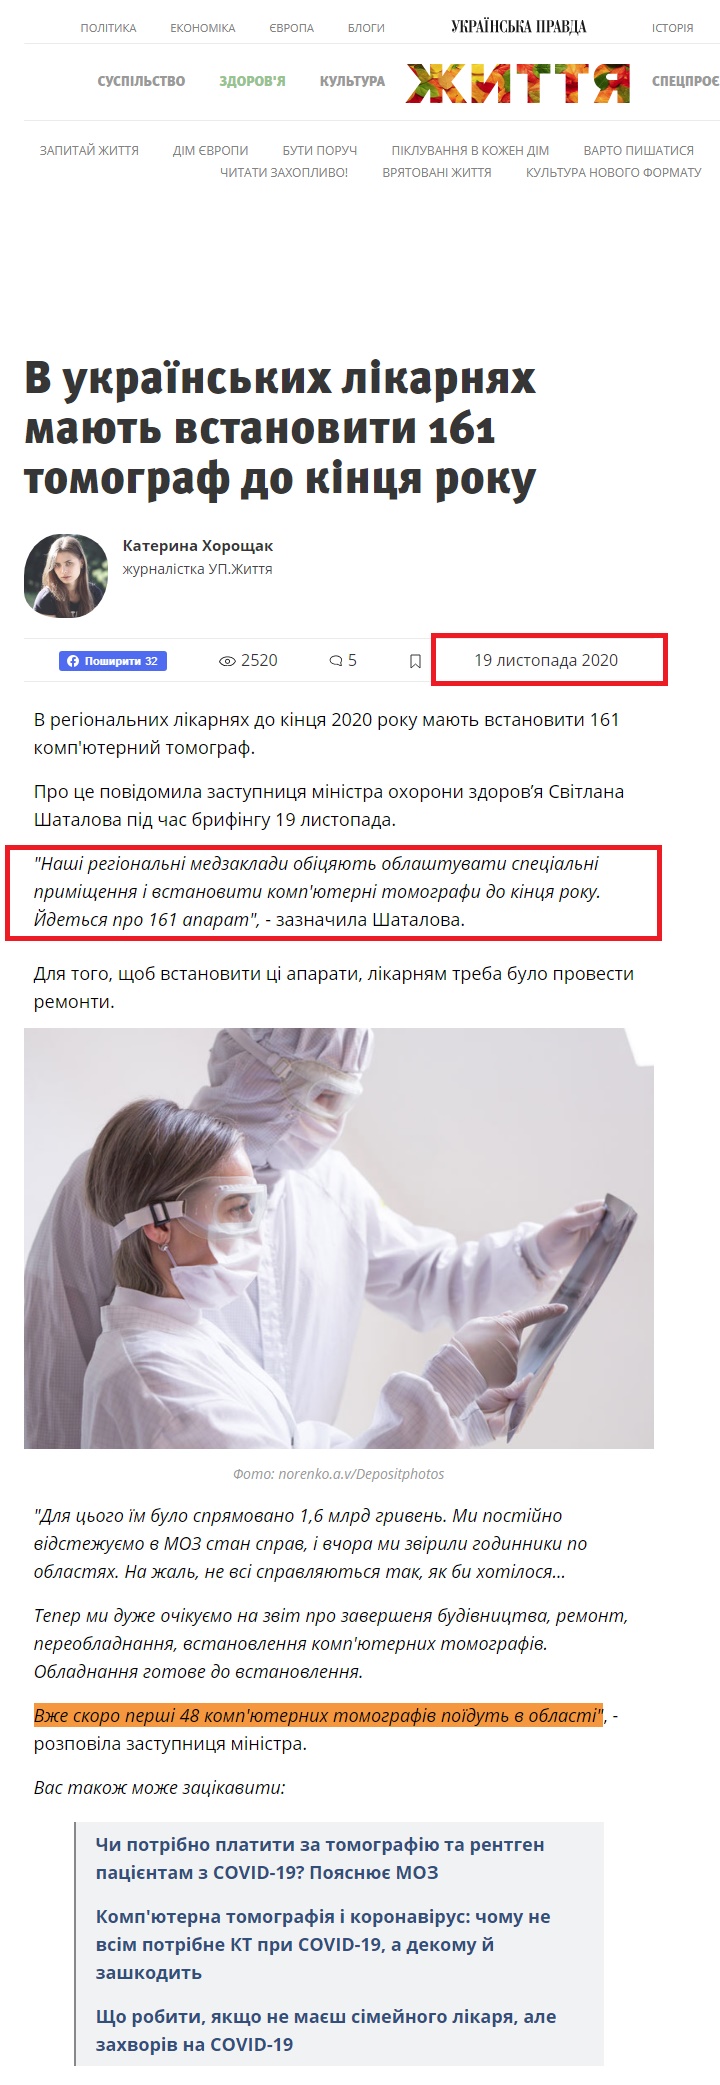 https://life.pravda.com.ua/health/2020/11/19/243061/